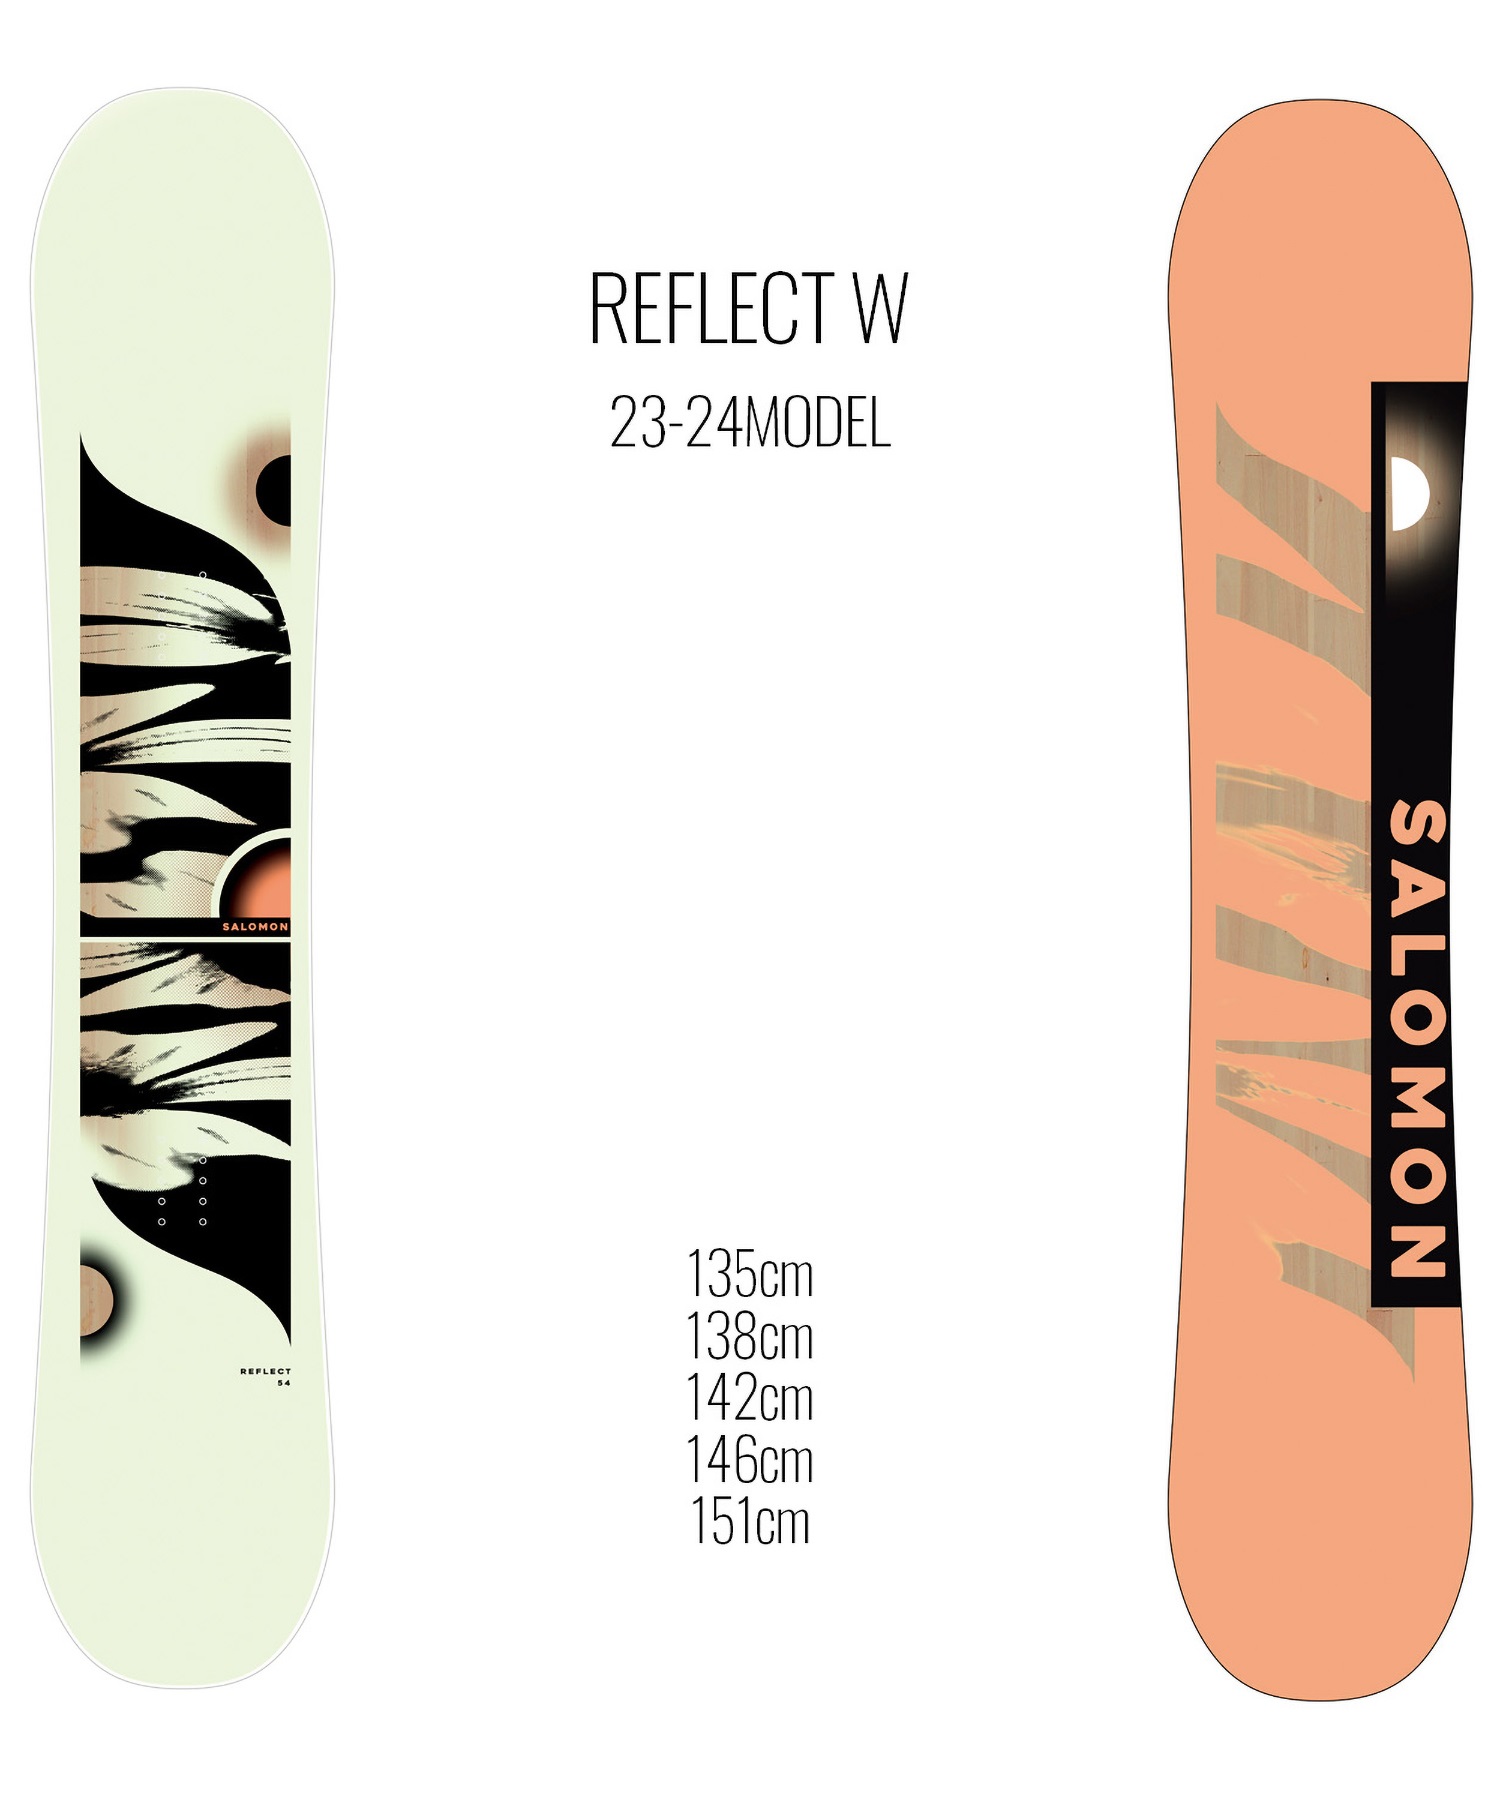 スノーボード 板 レディース SALOMON サロモン REFLECT W 23-24モデル ムラサキスポーツ KK C2(REFLECTW-135cm)